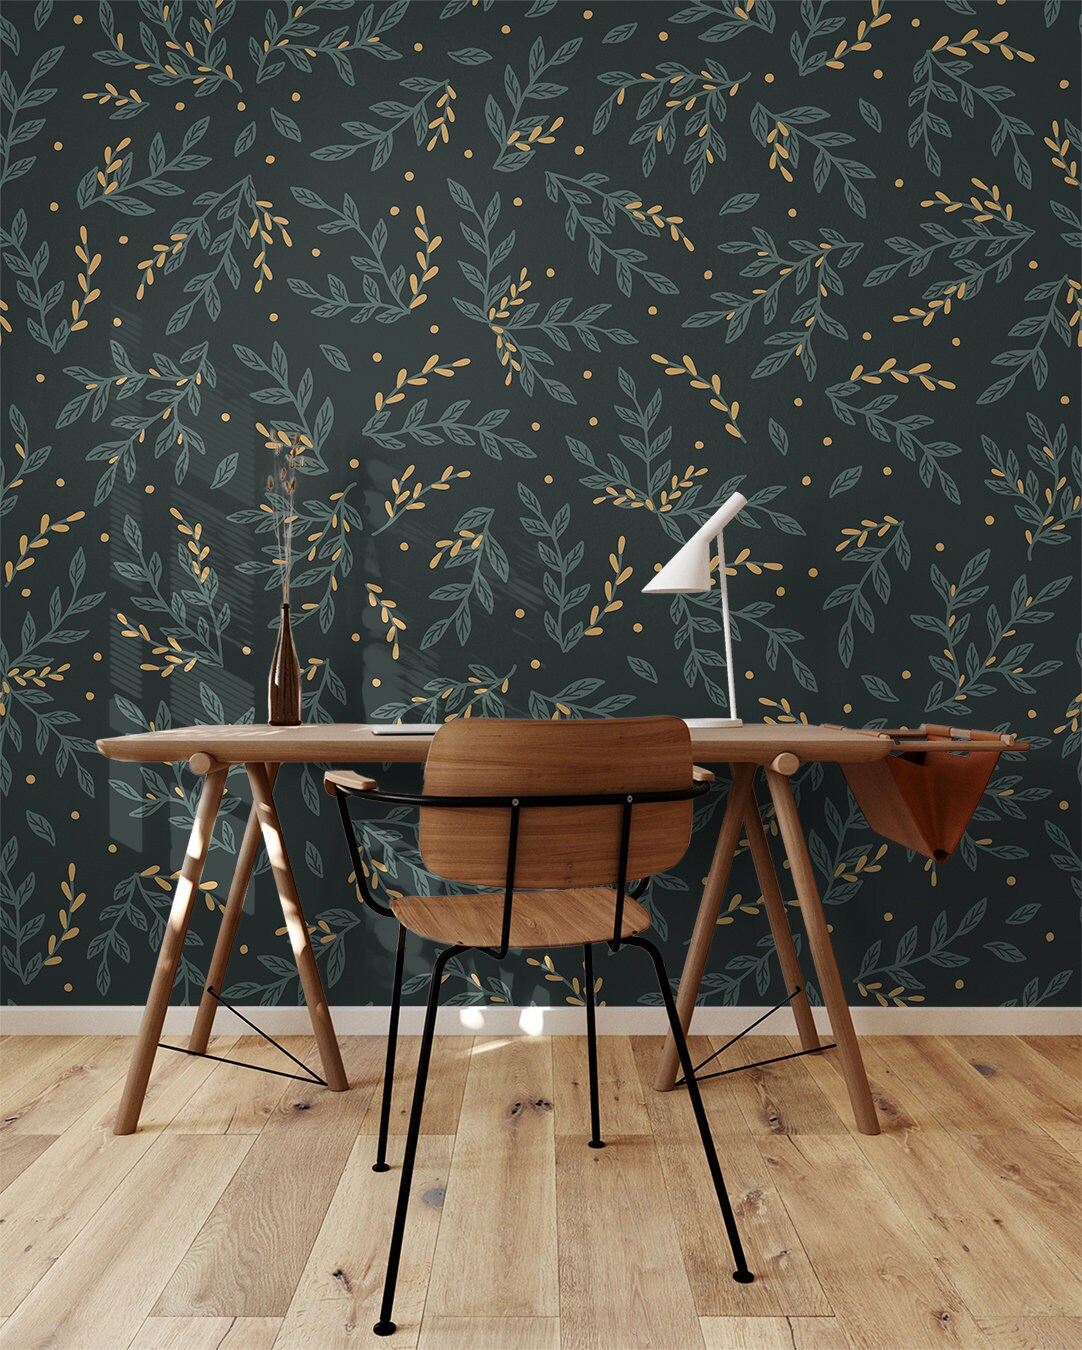 Dark Floral Boho Wallpaper | Wallpaper Peel and Stick | Removable Wallpaper | Peel and Stick Wallpaper | Wall Paper Peel And Stick  2376 - JamesAndColors